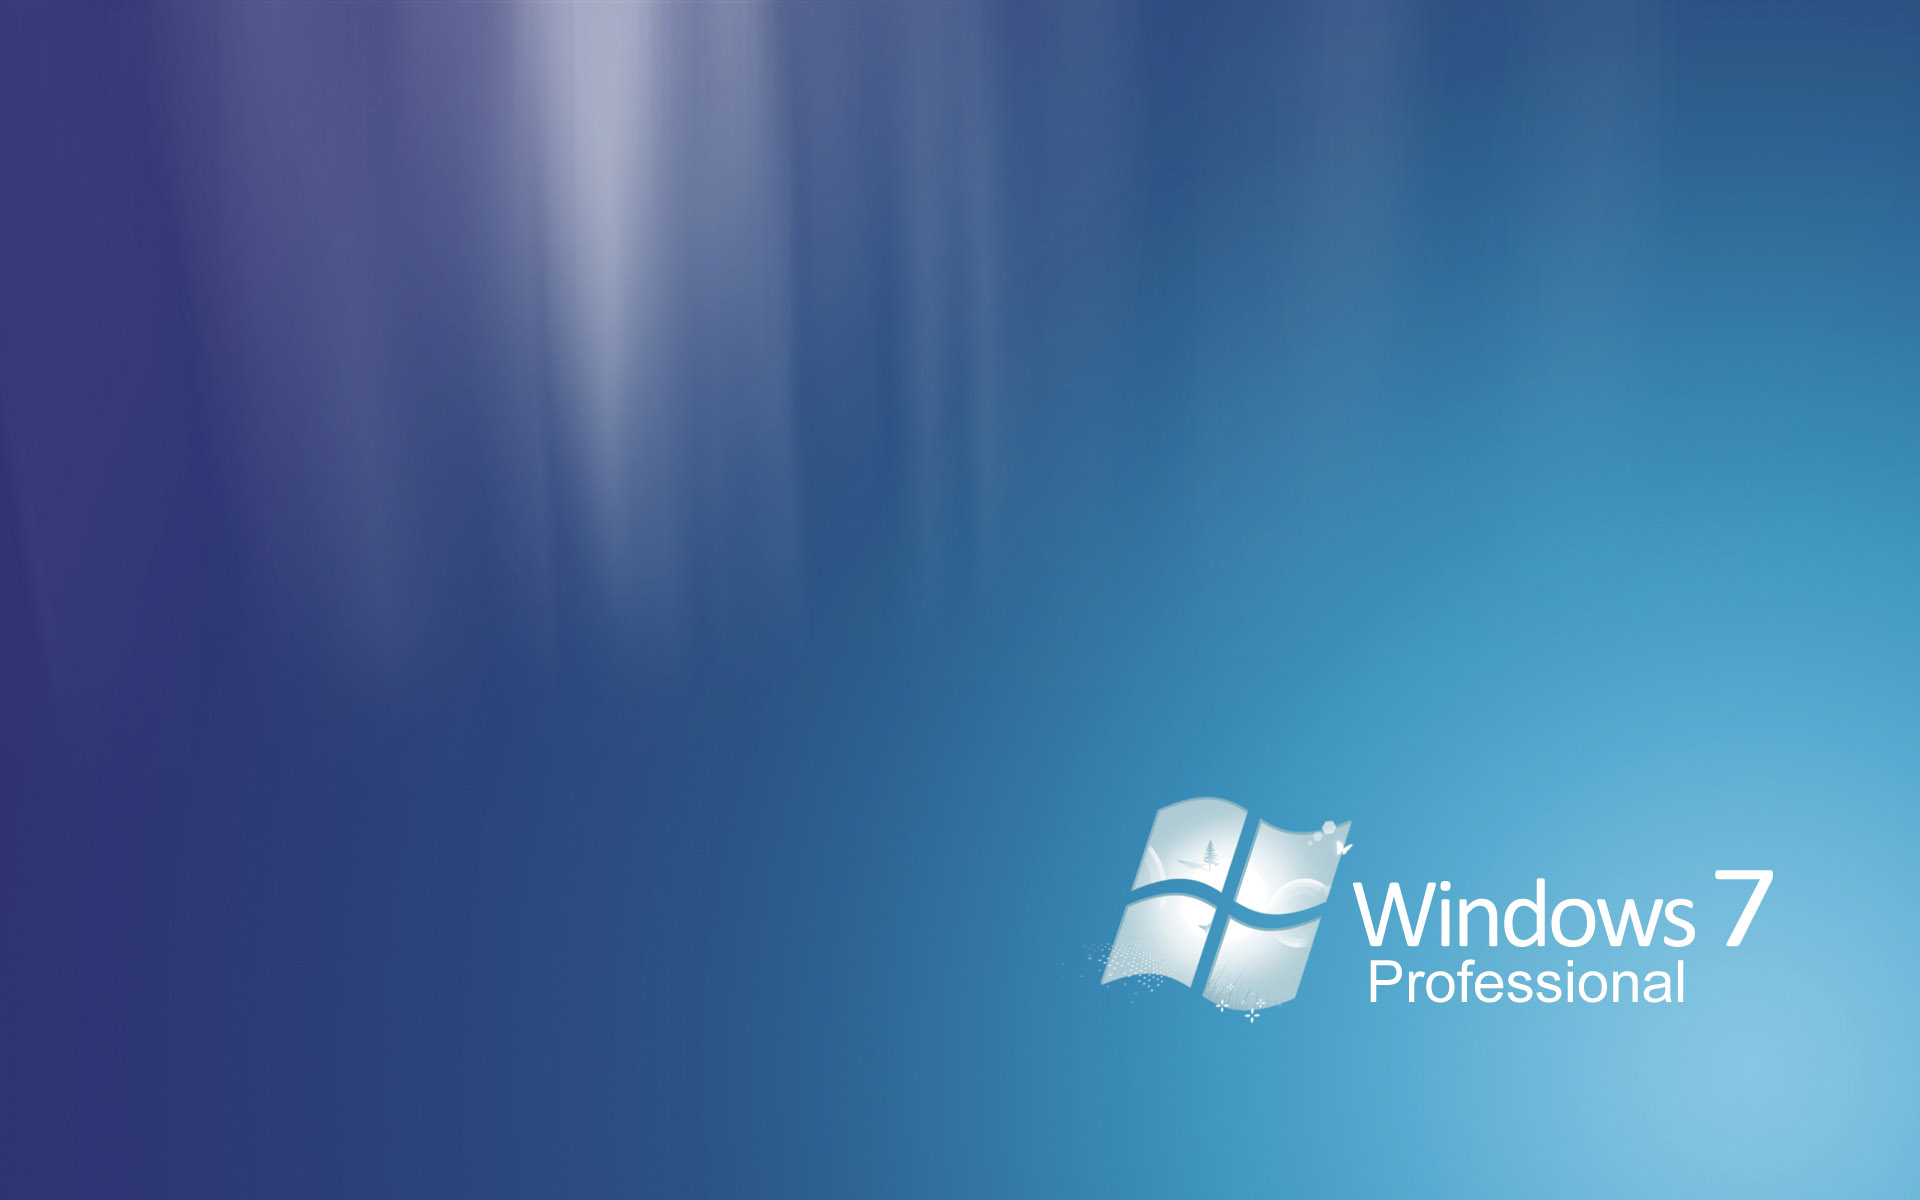 Windows 7 Wallpapers. Bureaublad achtergronden van Windows 7.